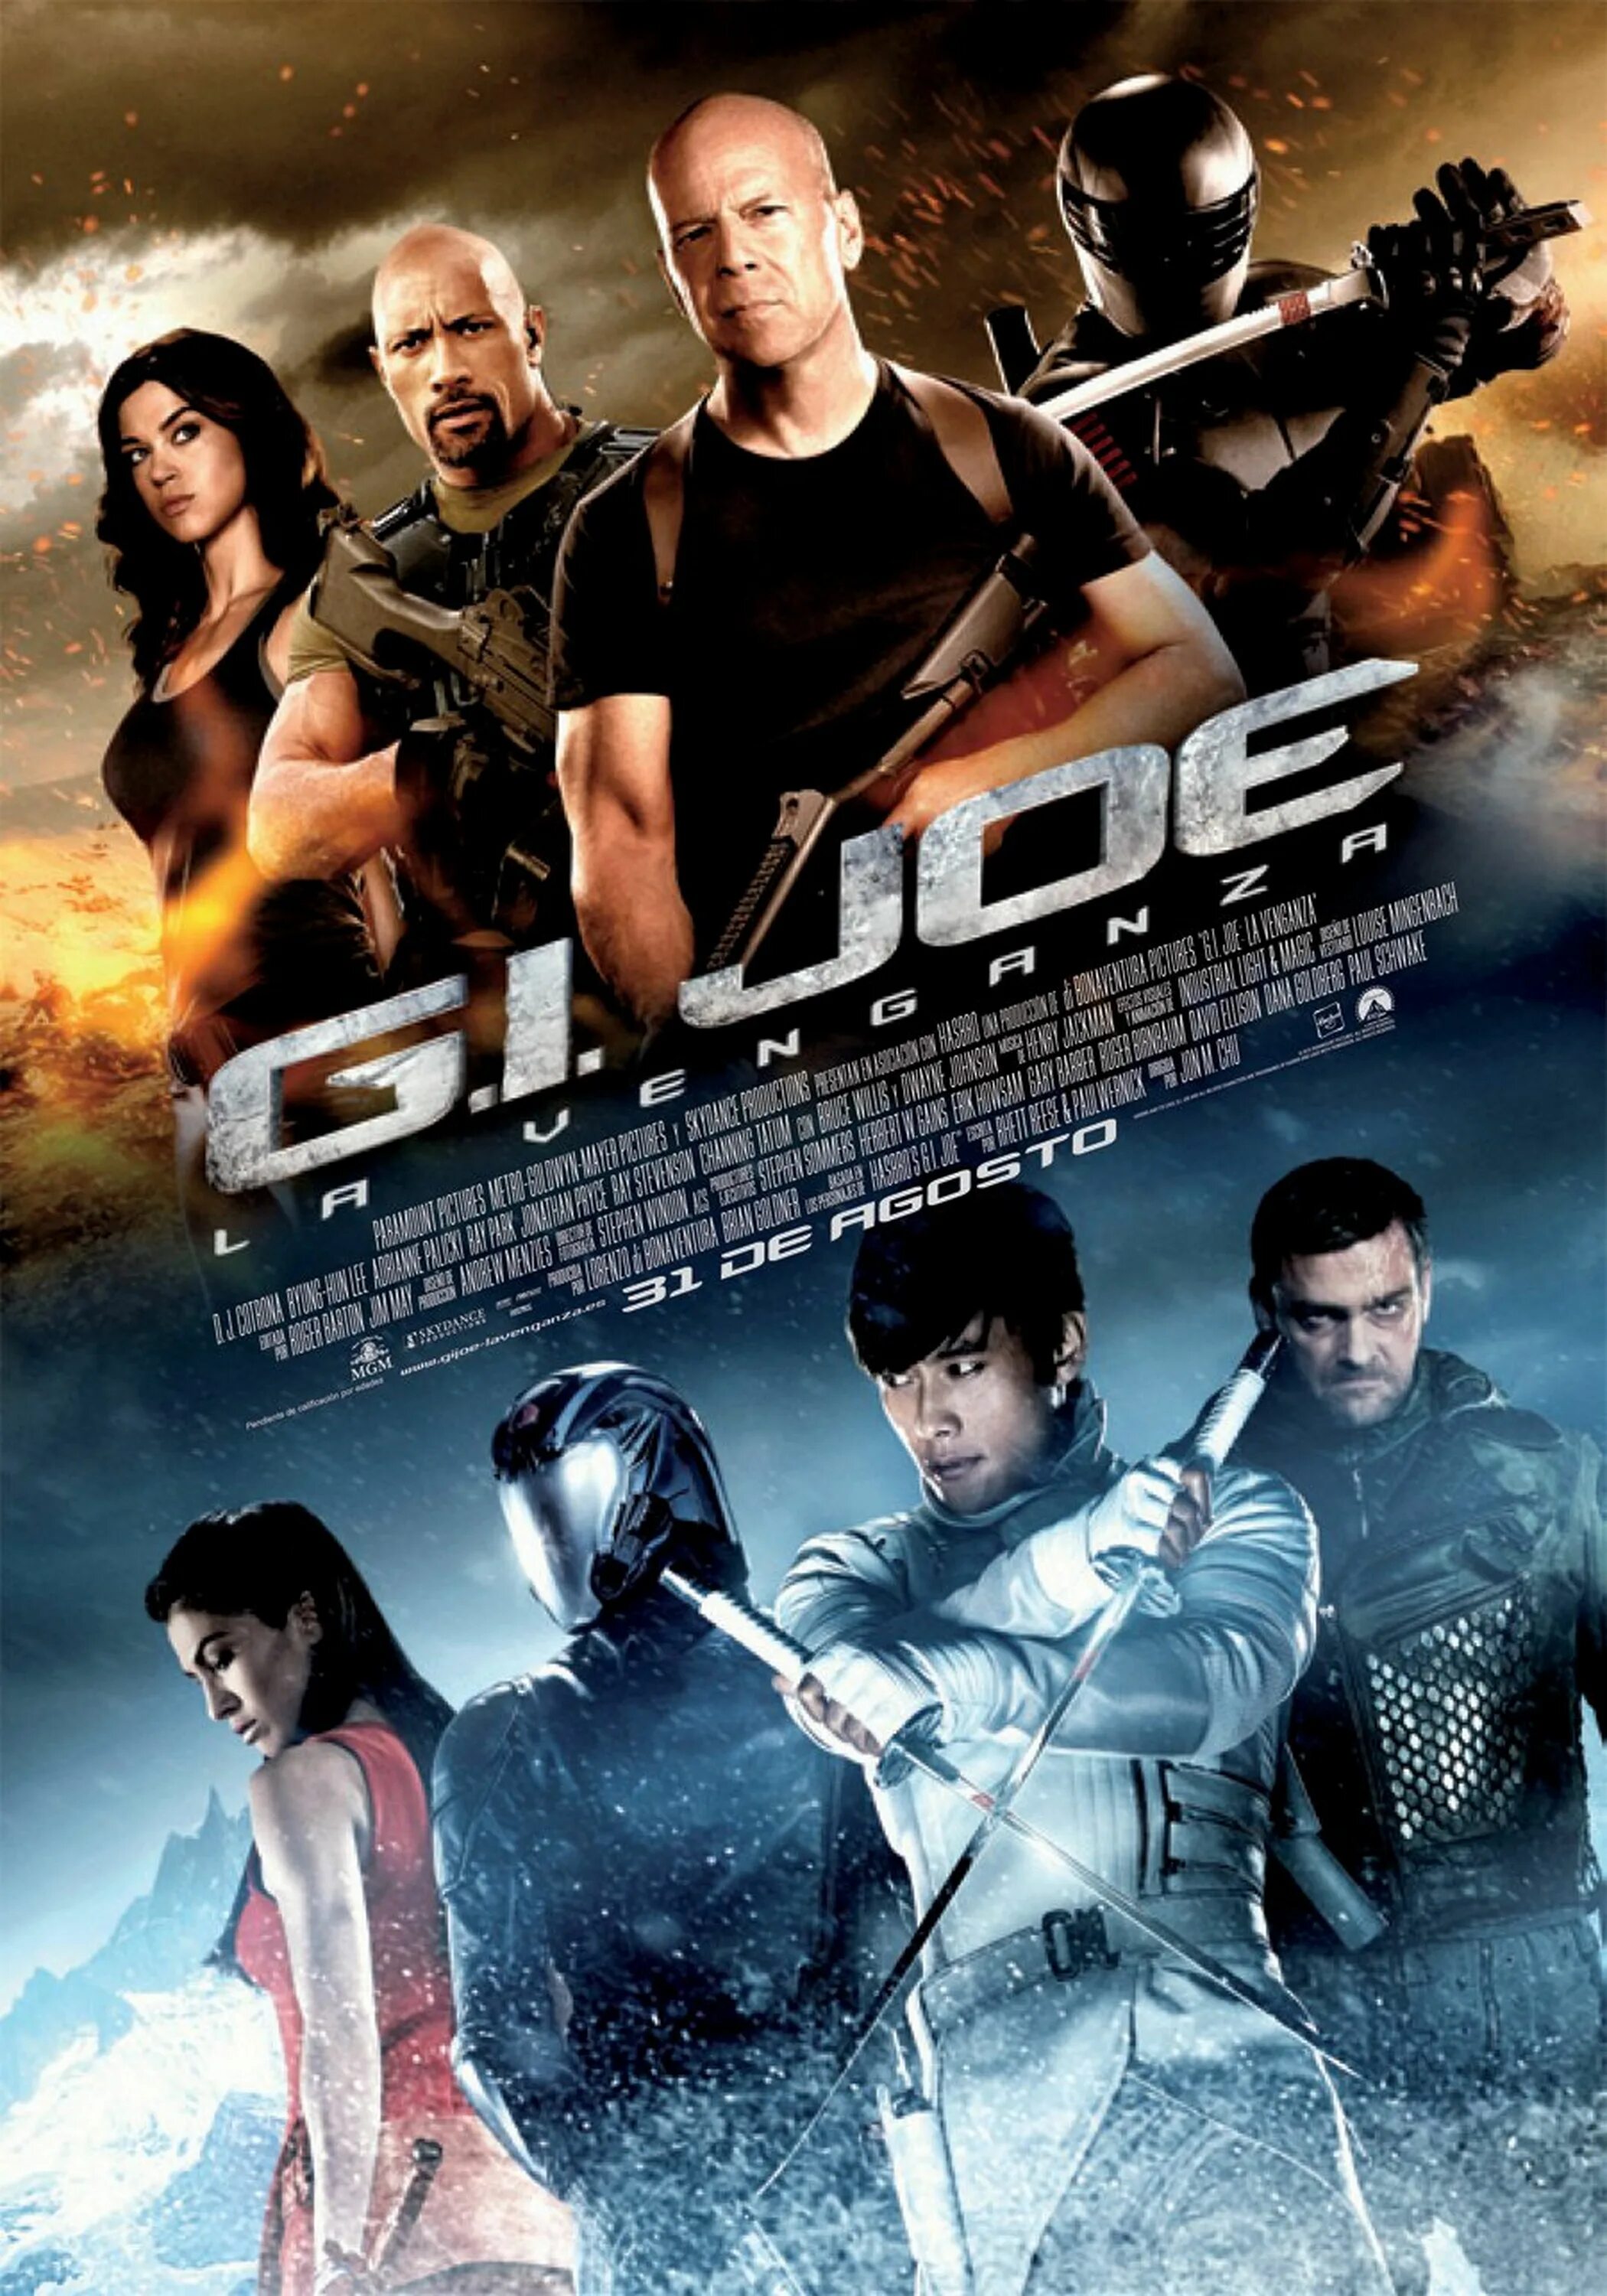 2 июня 2013. G.I. Joe. Бросок кобры 2. G.I. Joe: бросок кобры 2 (2013) g.i. Joe: Retaliation. G.I. Joe Retaliation.2013 Постер.